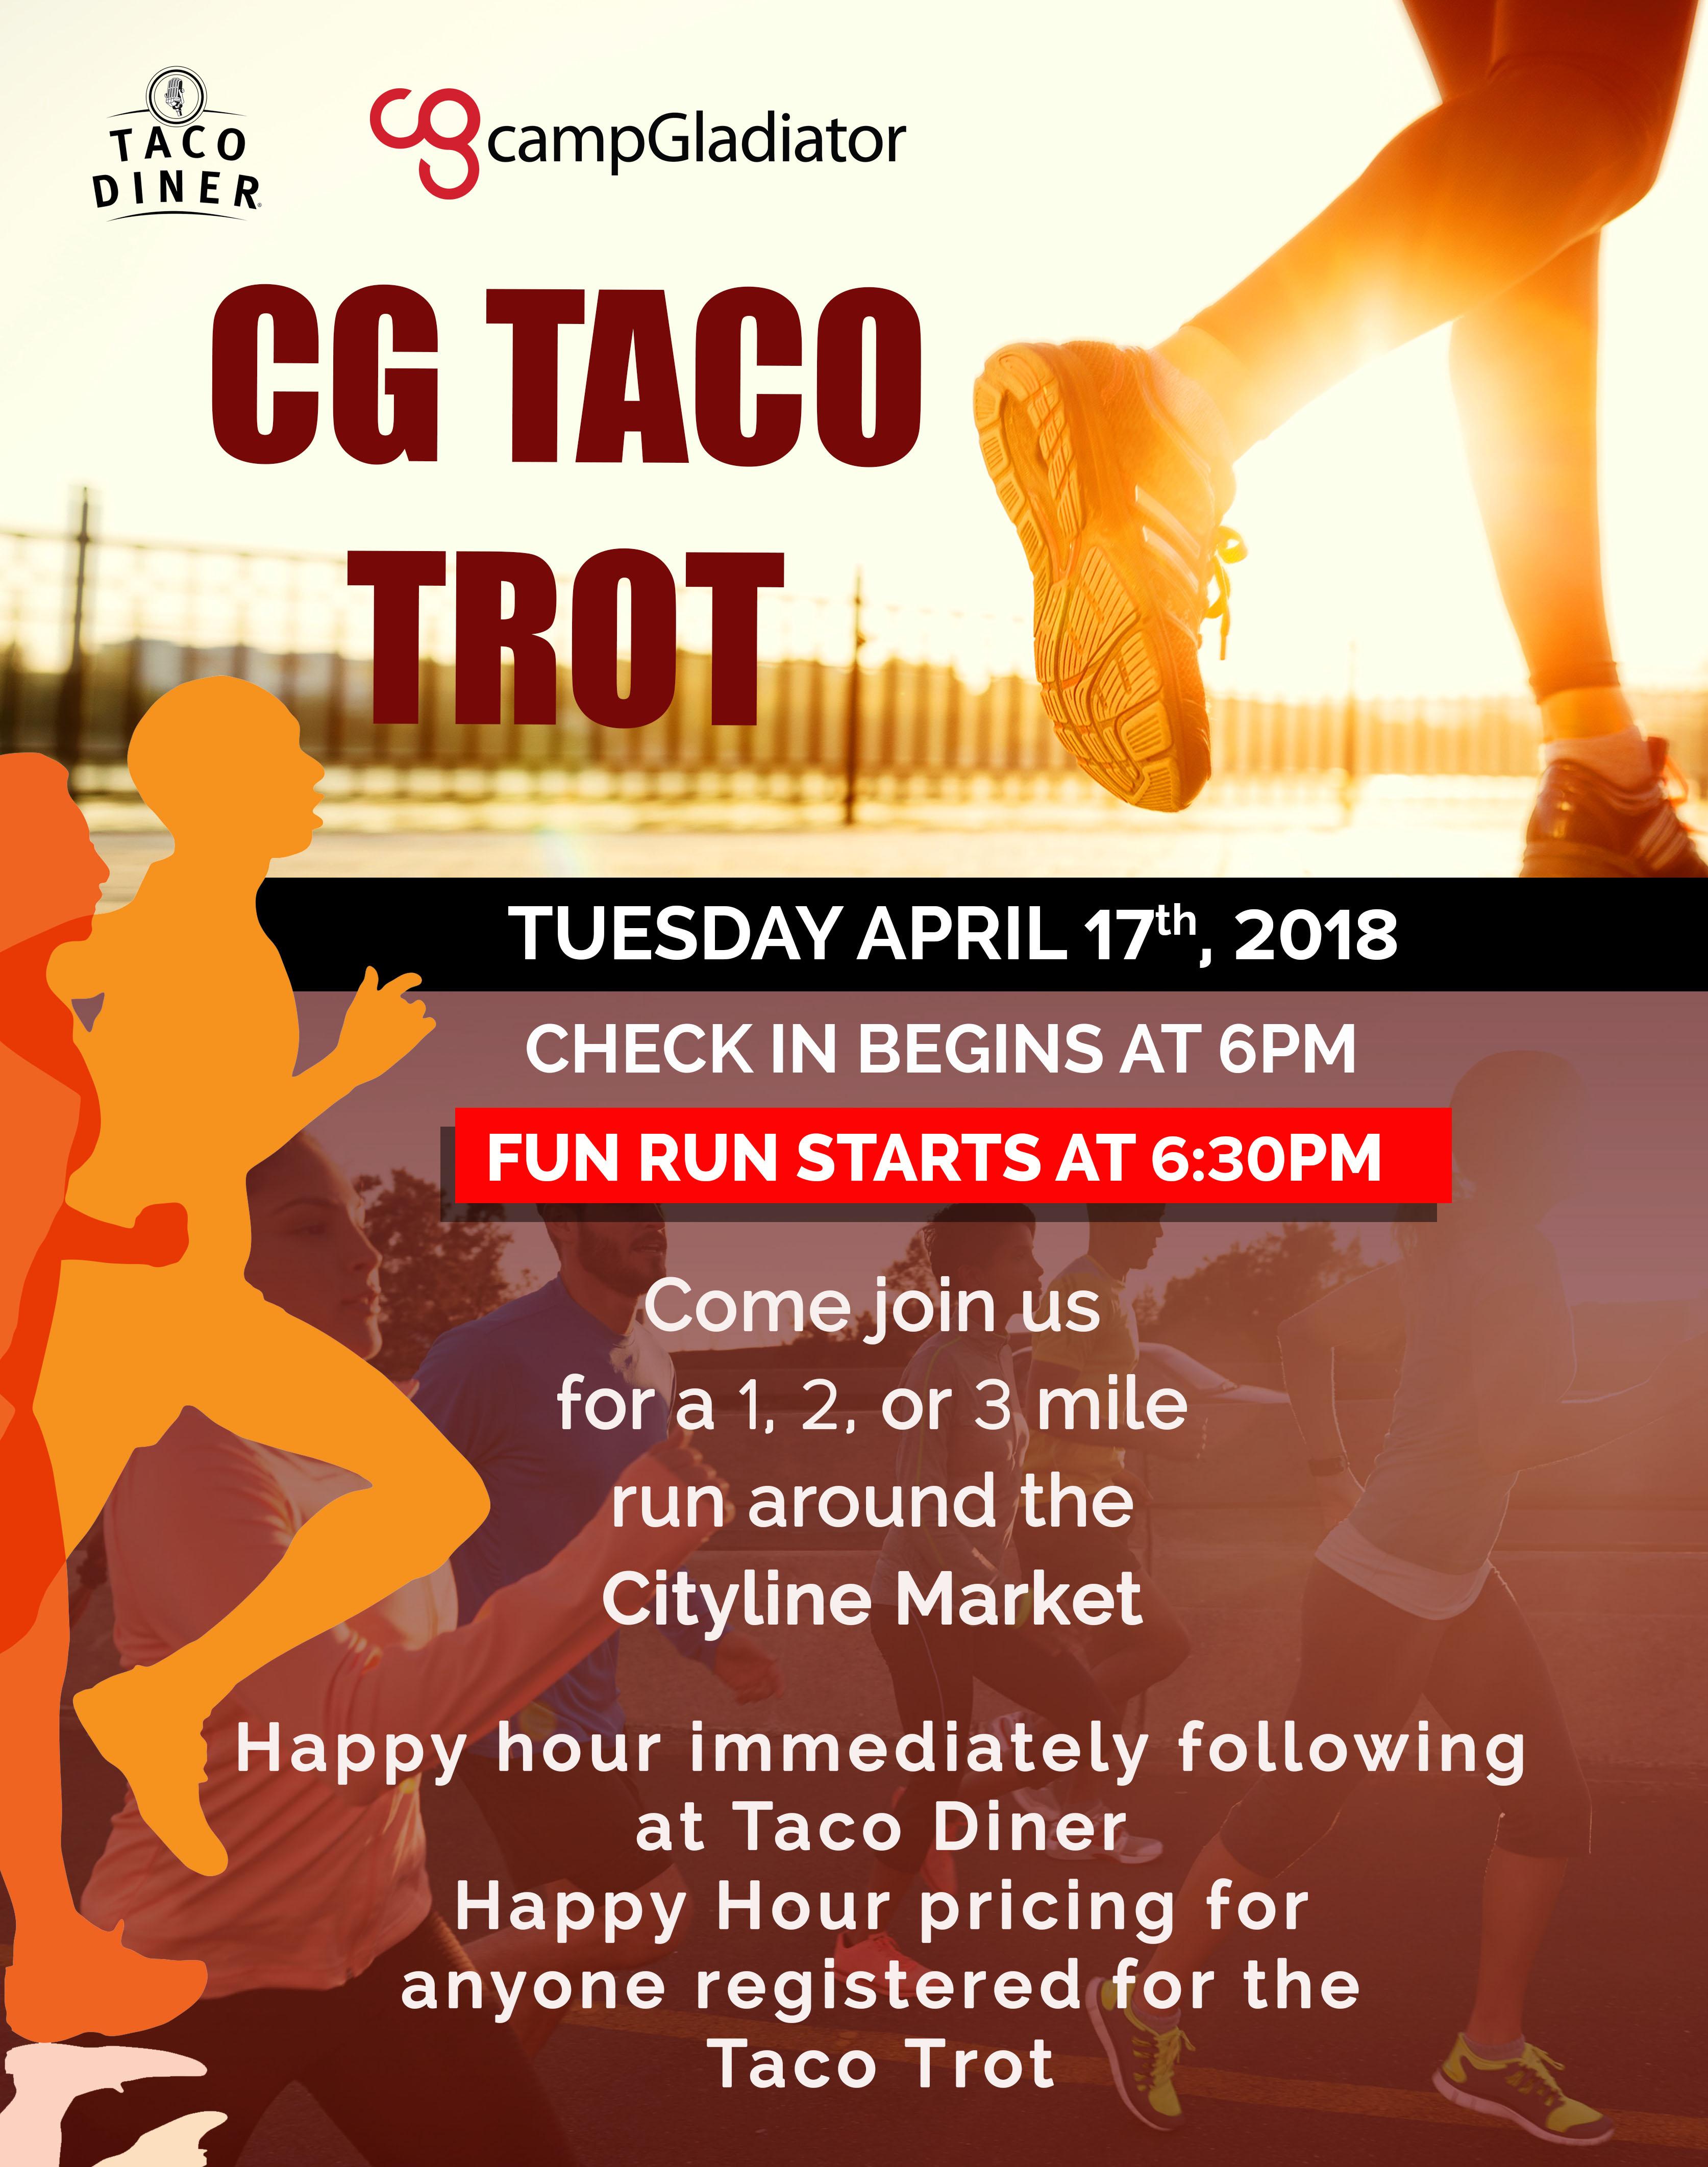 CG Taco Trot - 1, 2, or 3 mile fun run